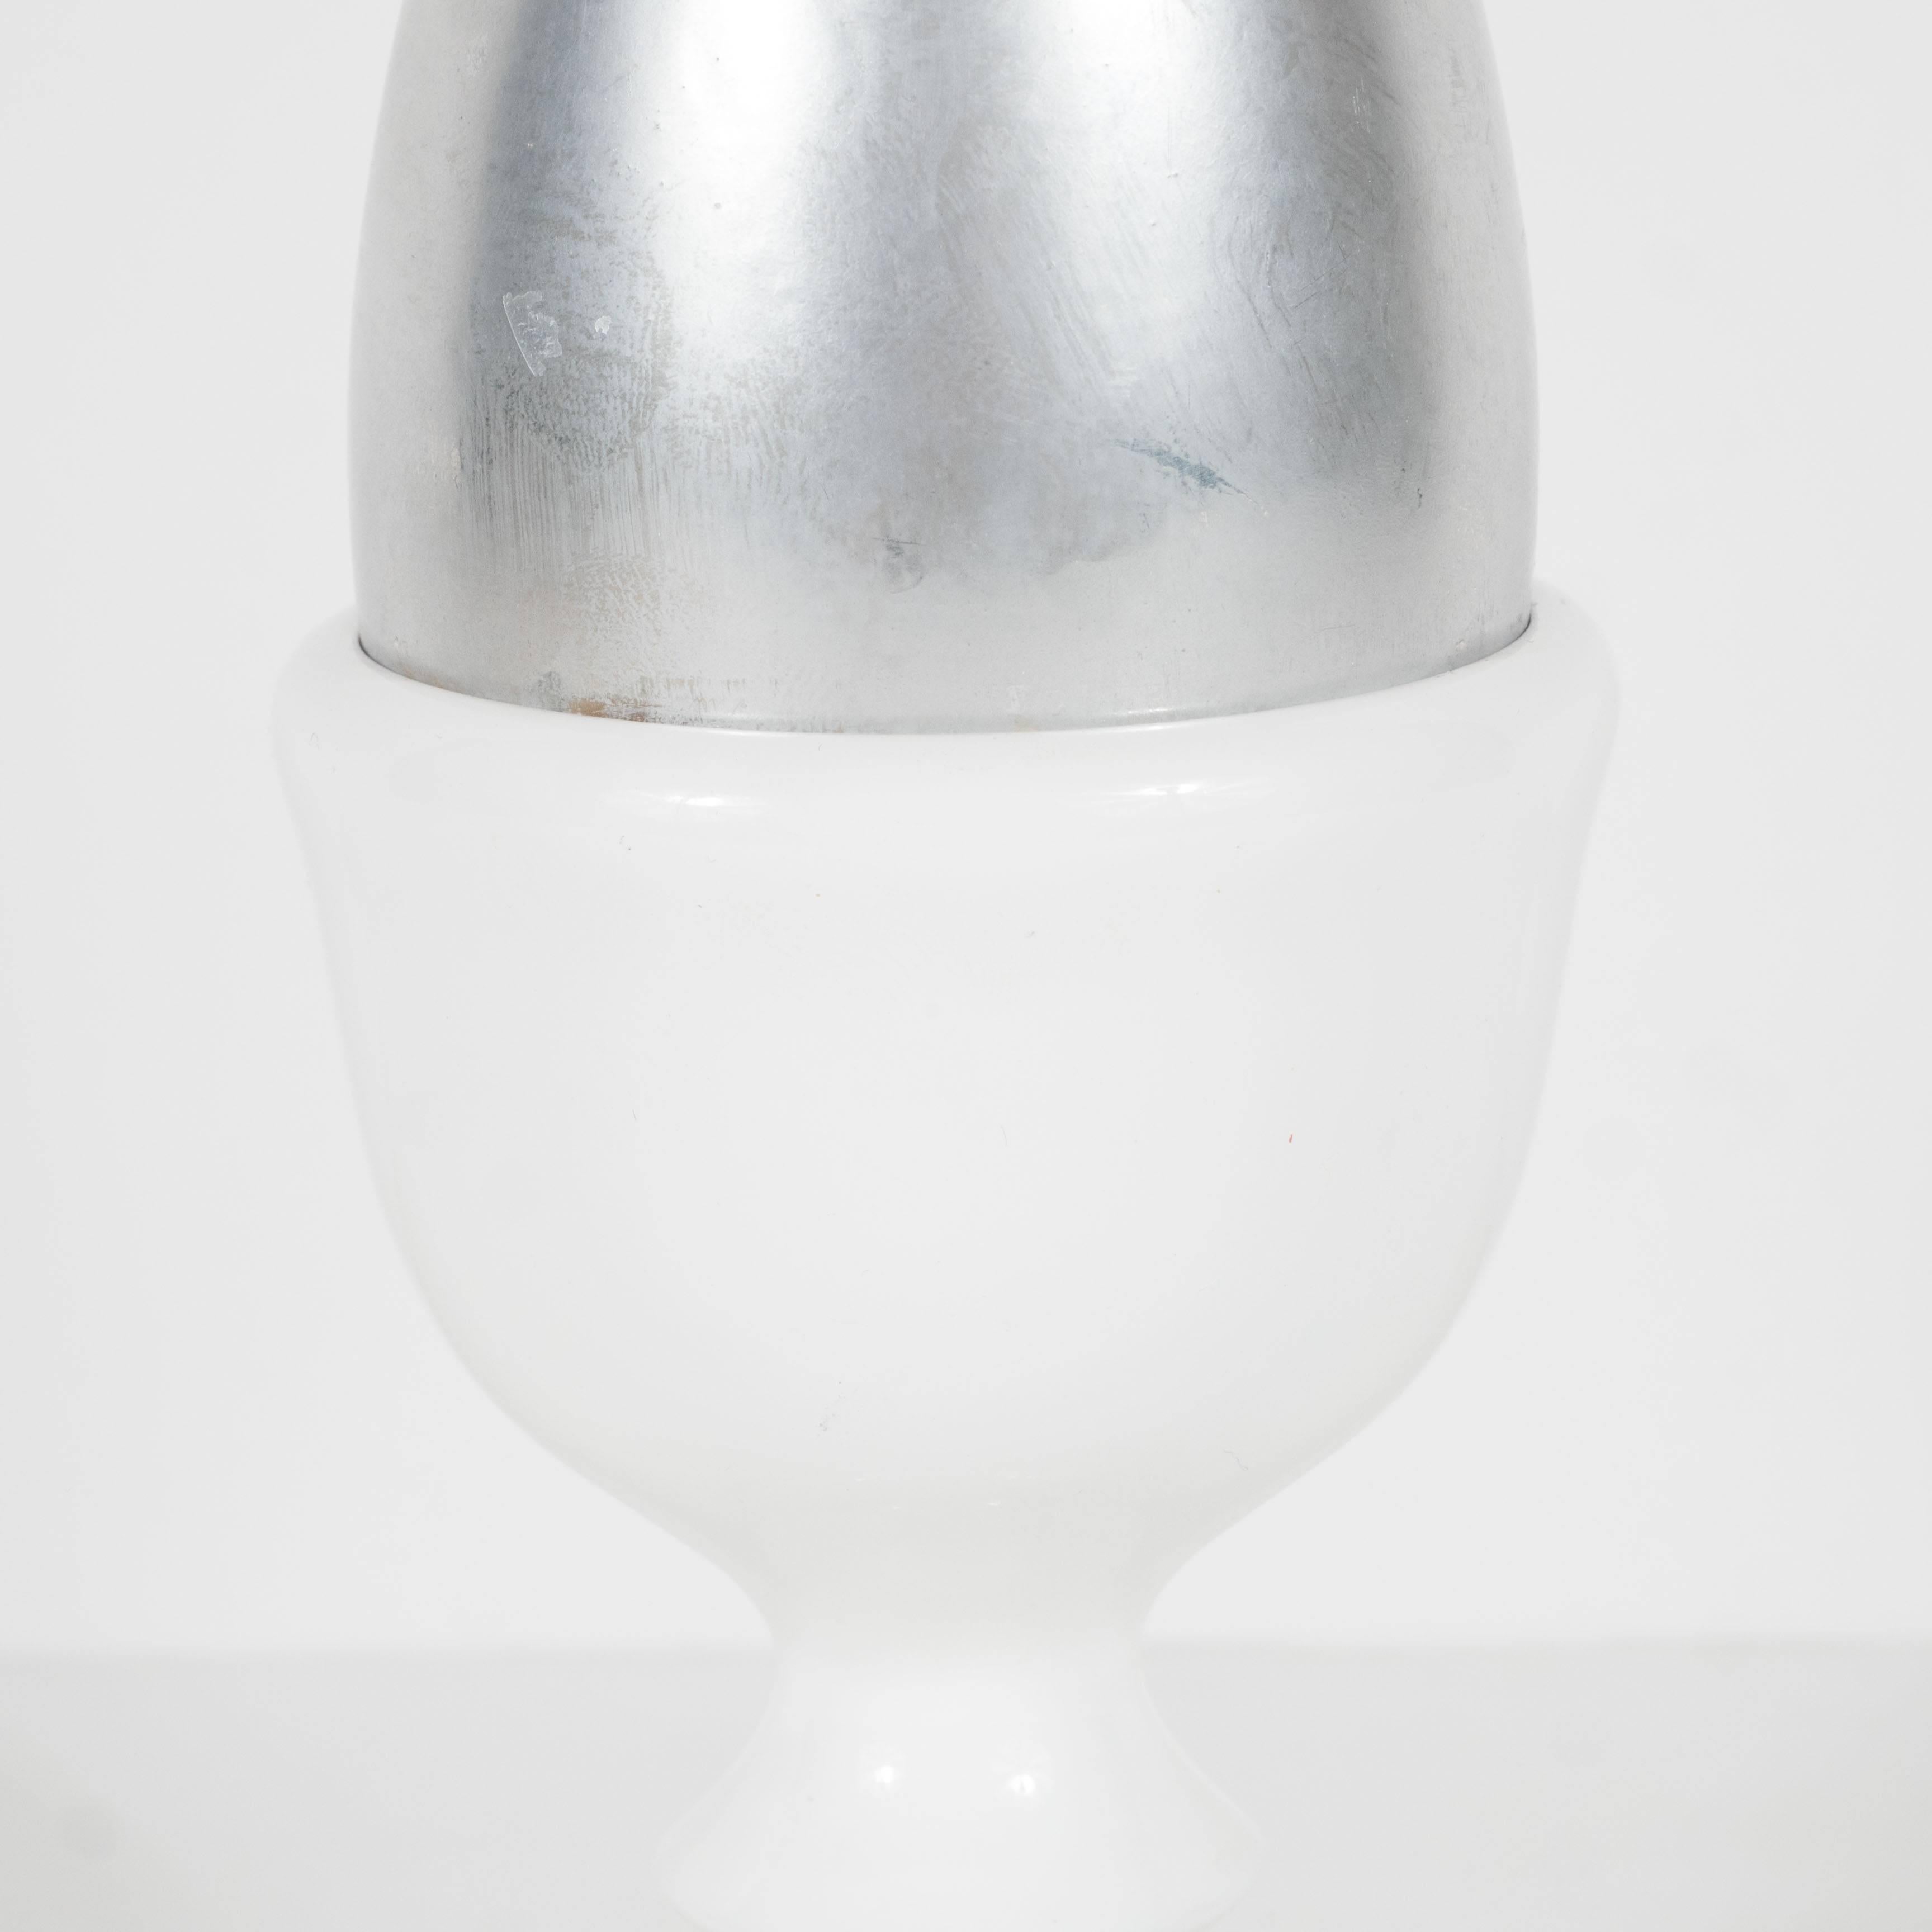 Post-Modern Pop Art Sculpture of a Silver Egg by Herbert Distel, circa 1968 For Sale